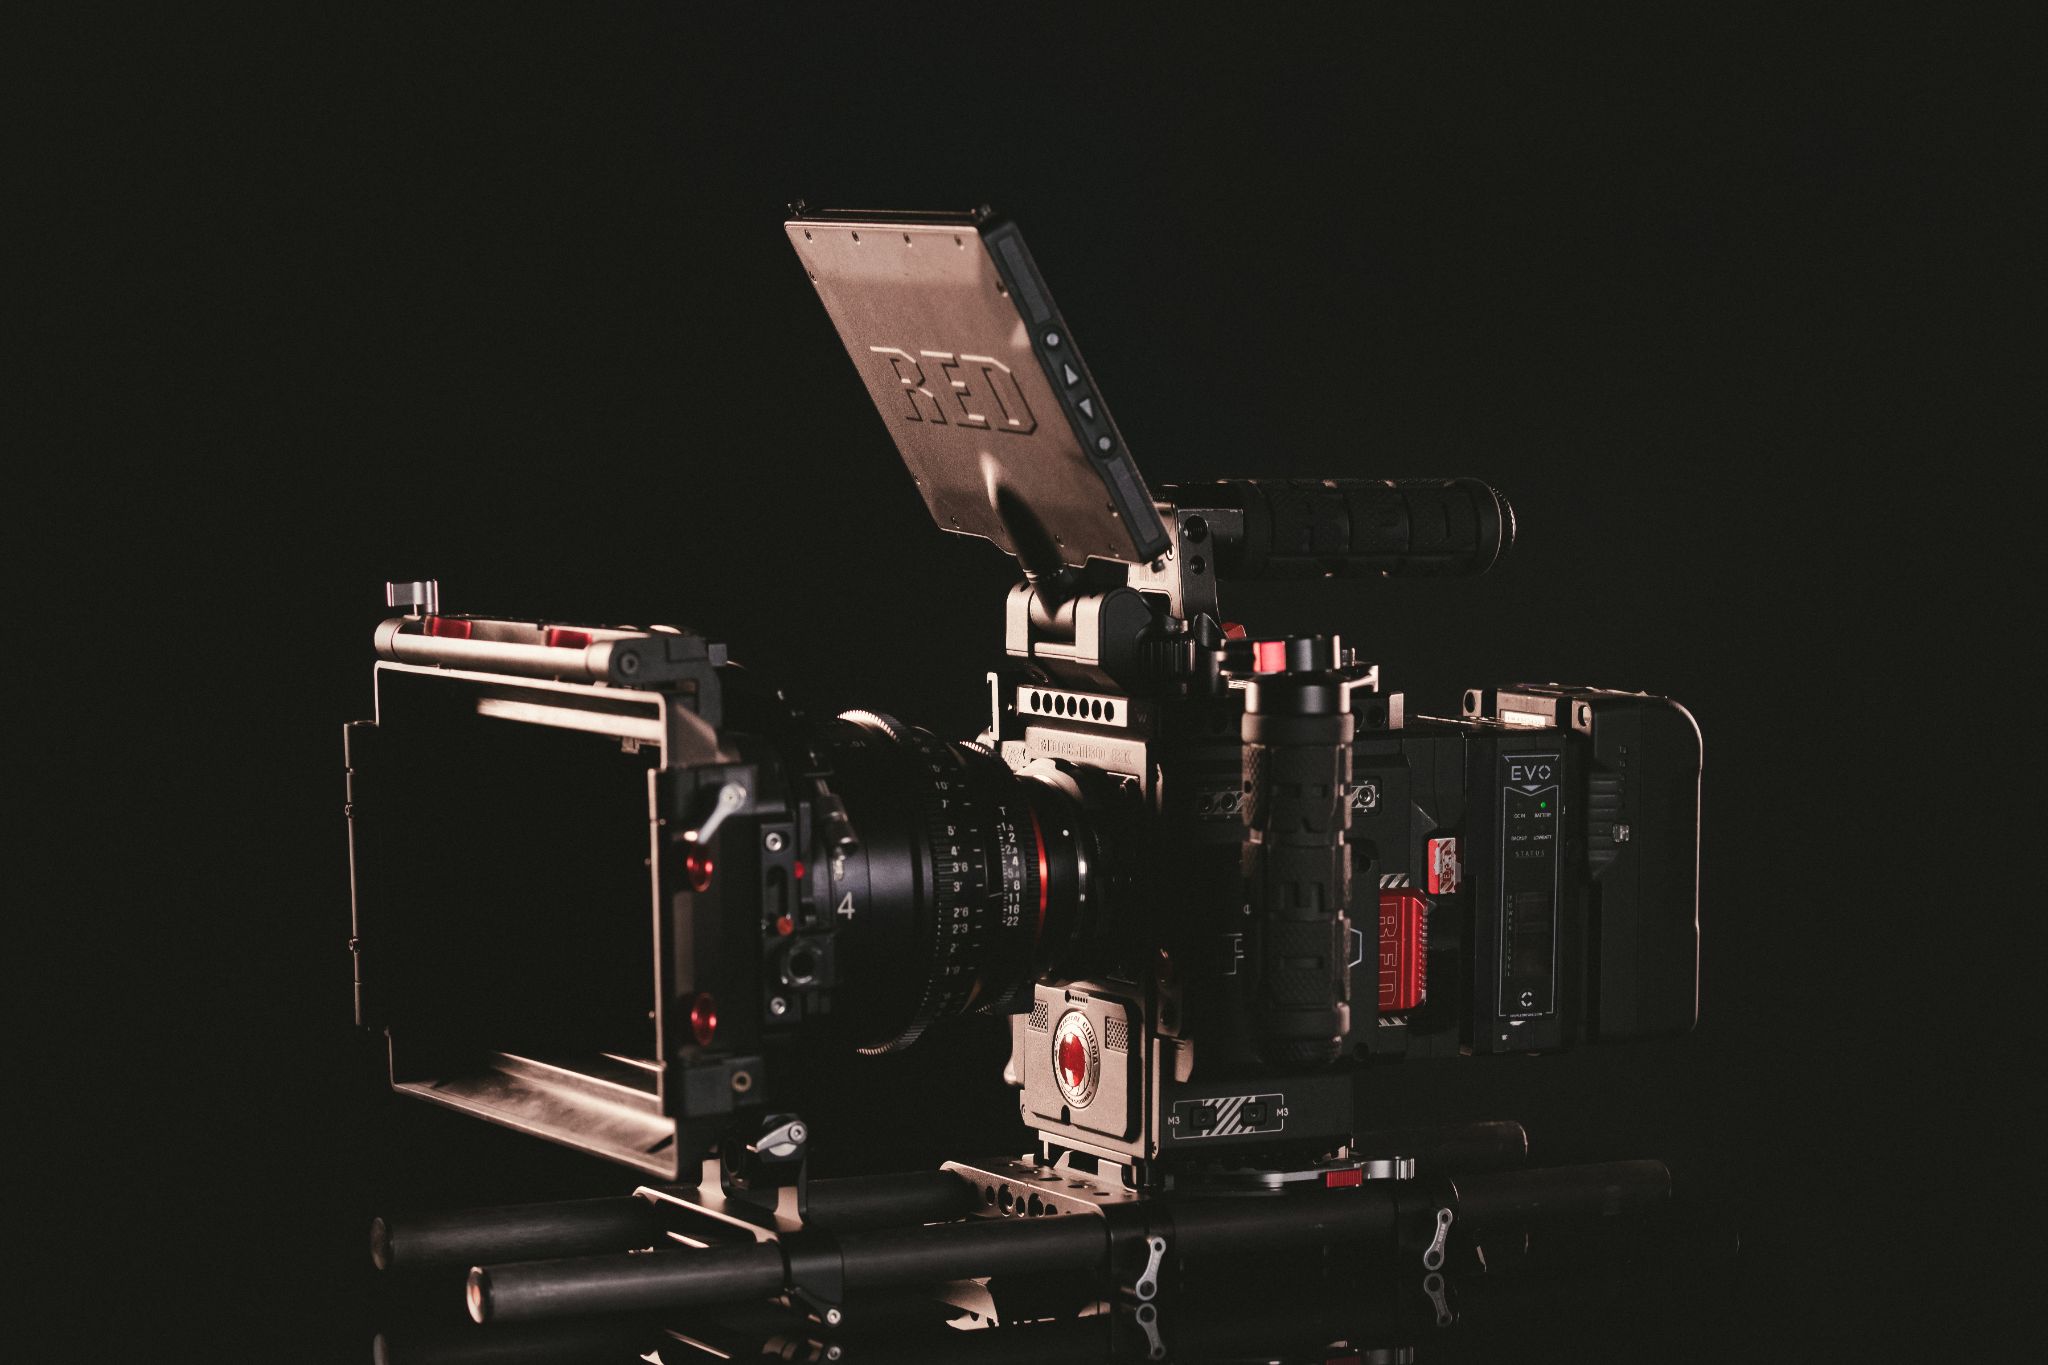 Closeup of RED video camera